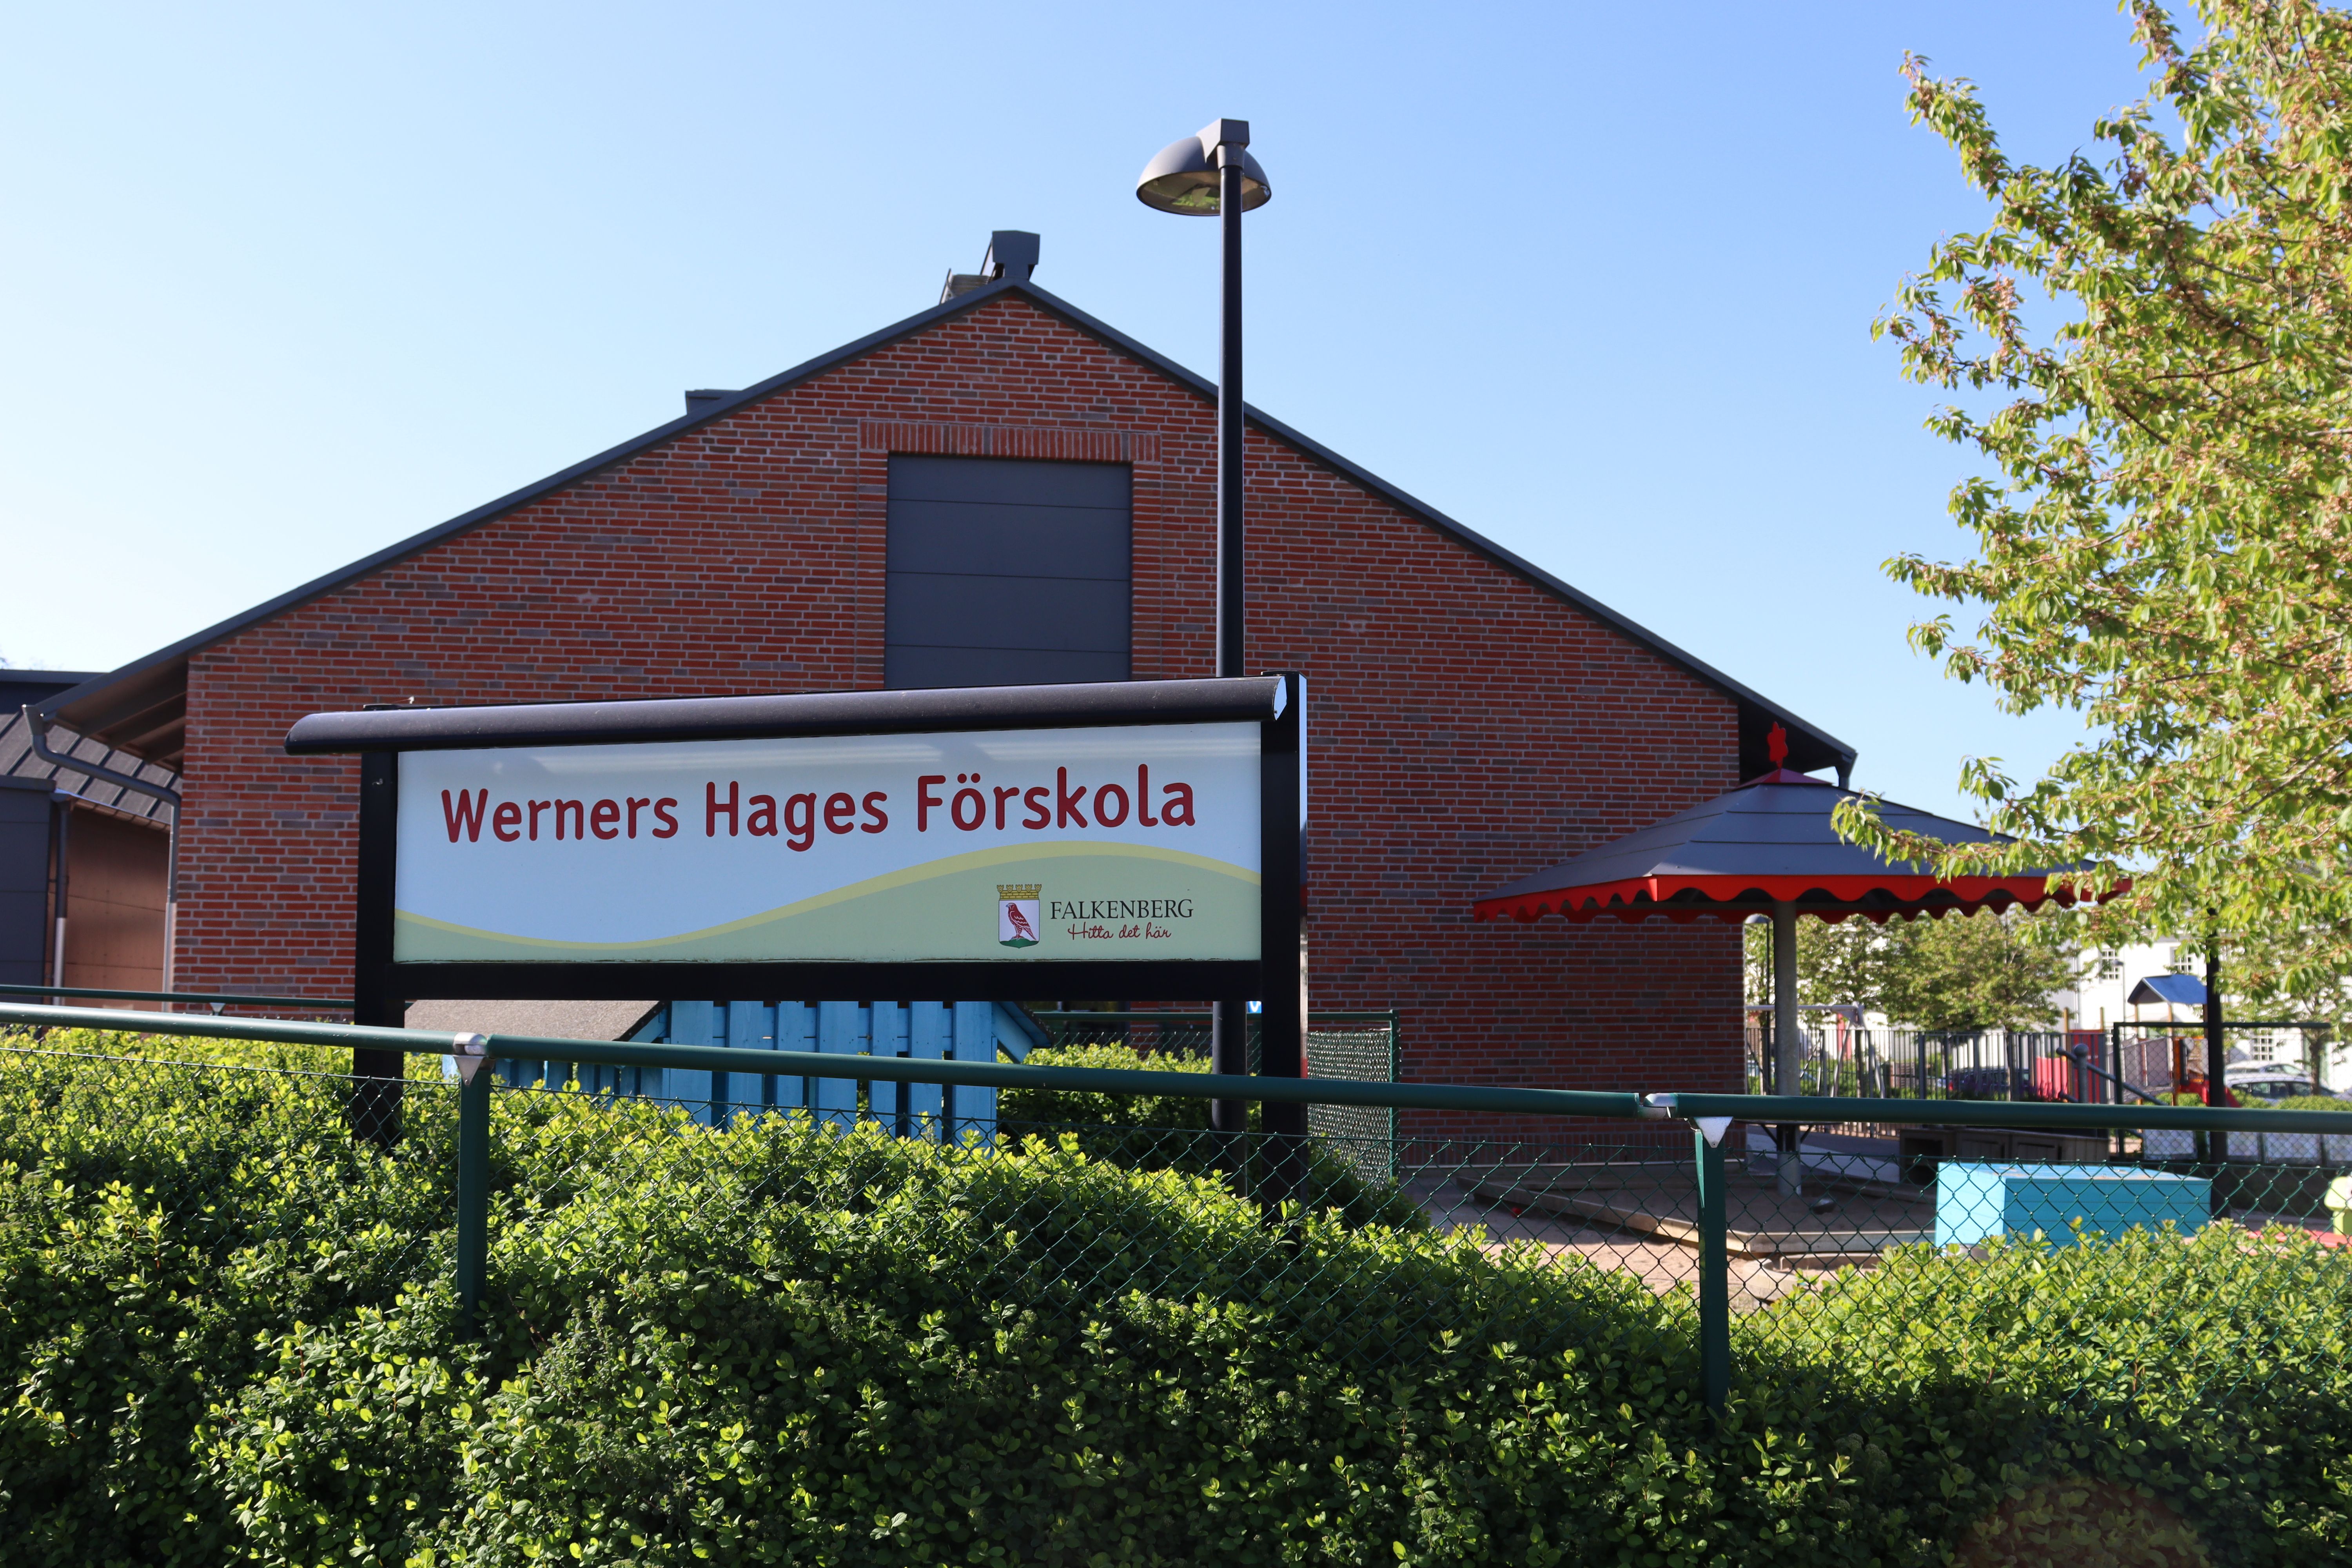 Röd tegelbyggnad sedd från gaveln med skylten "Werners Hages Förskola"